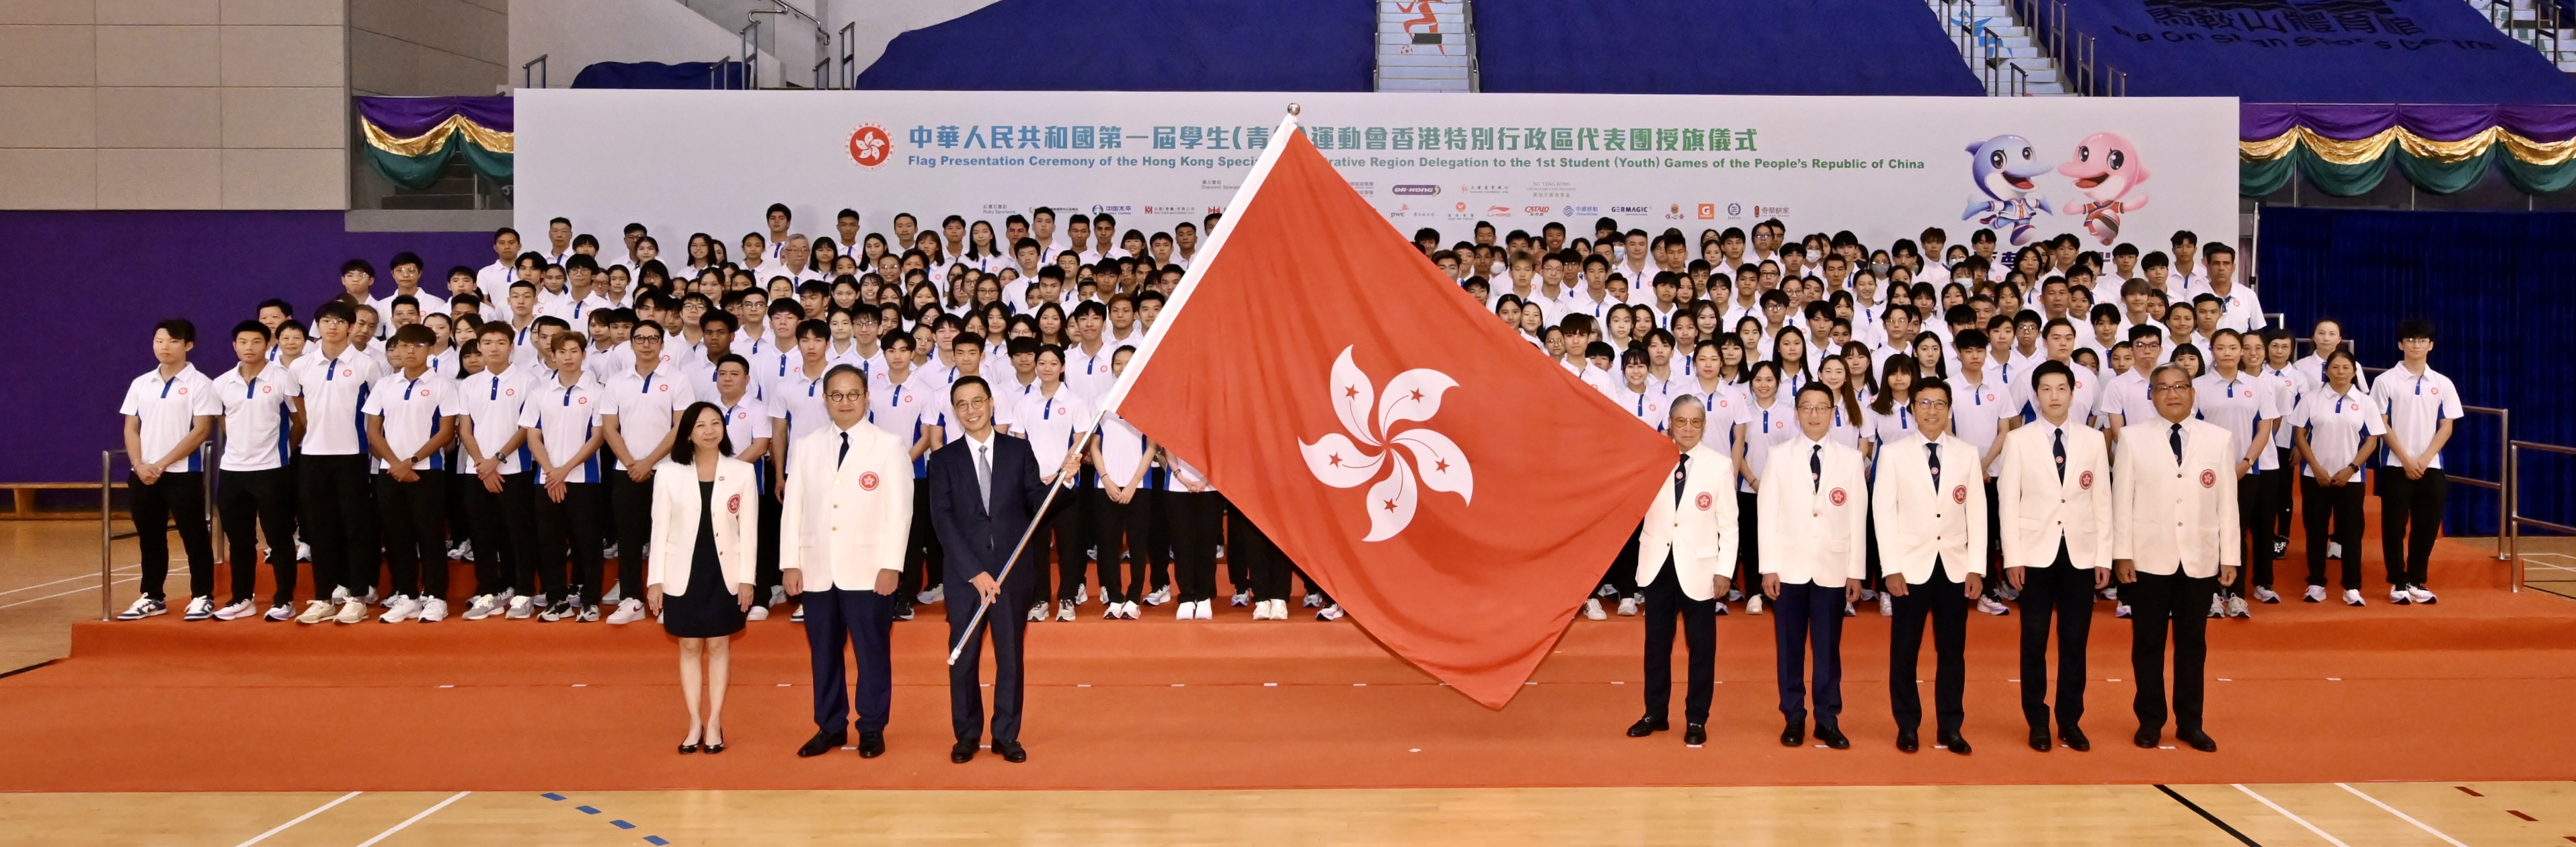 Flag Presentation Ceremony of the HKSAR Delegation 1